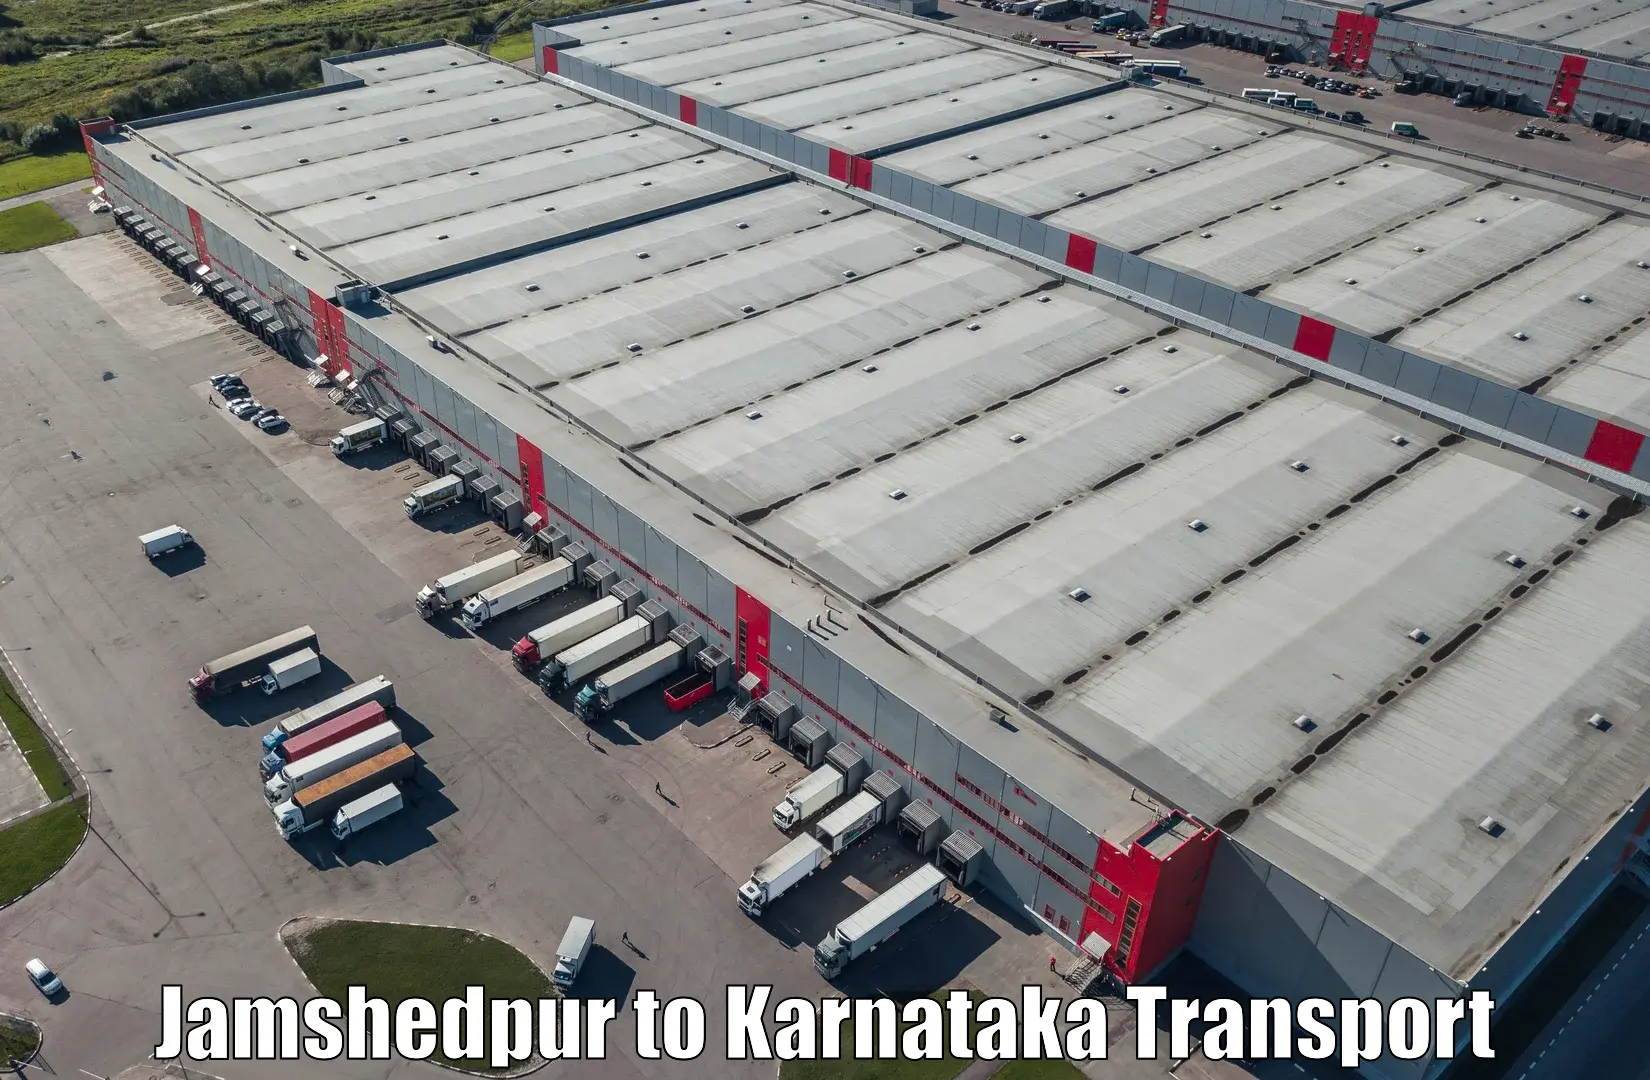 Nearby transport service Jamshedpur to Tirumakudalu Narasipura